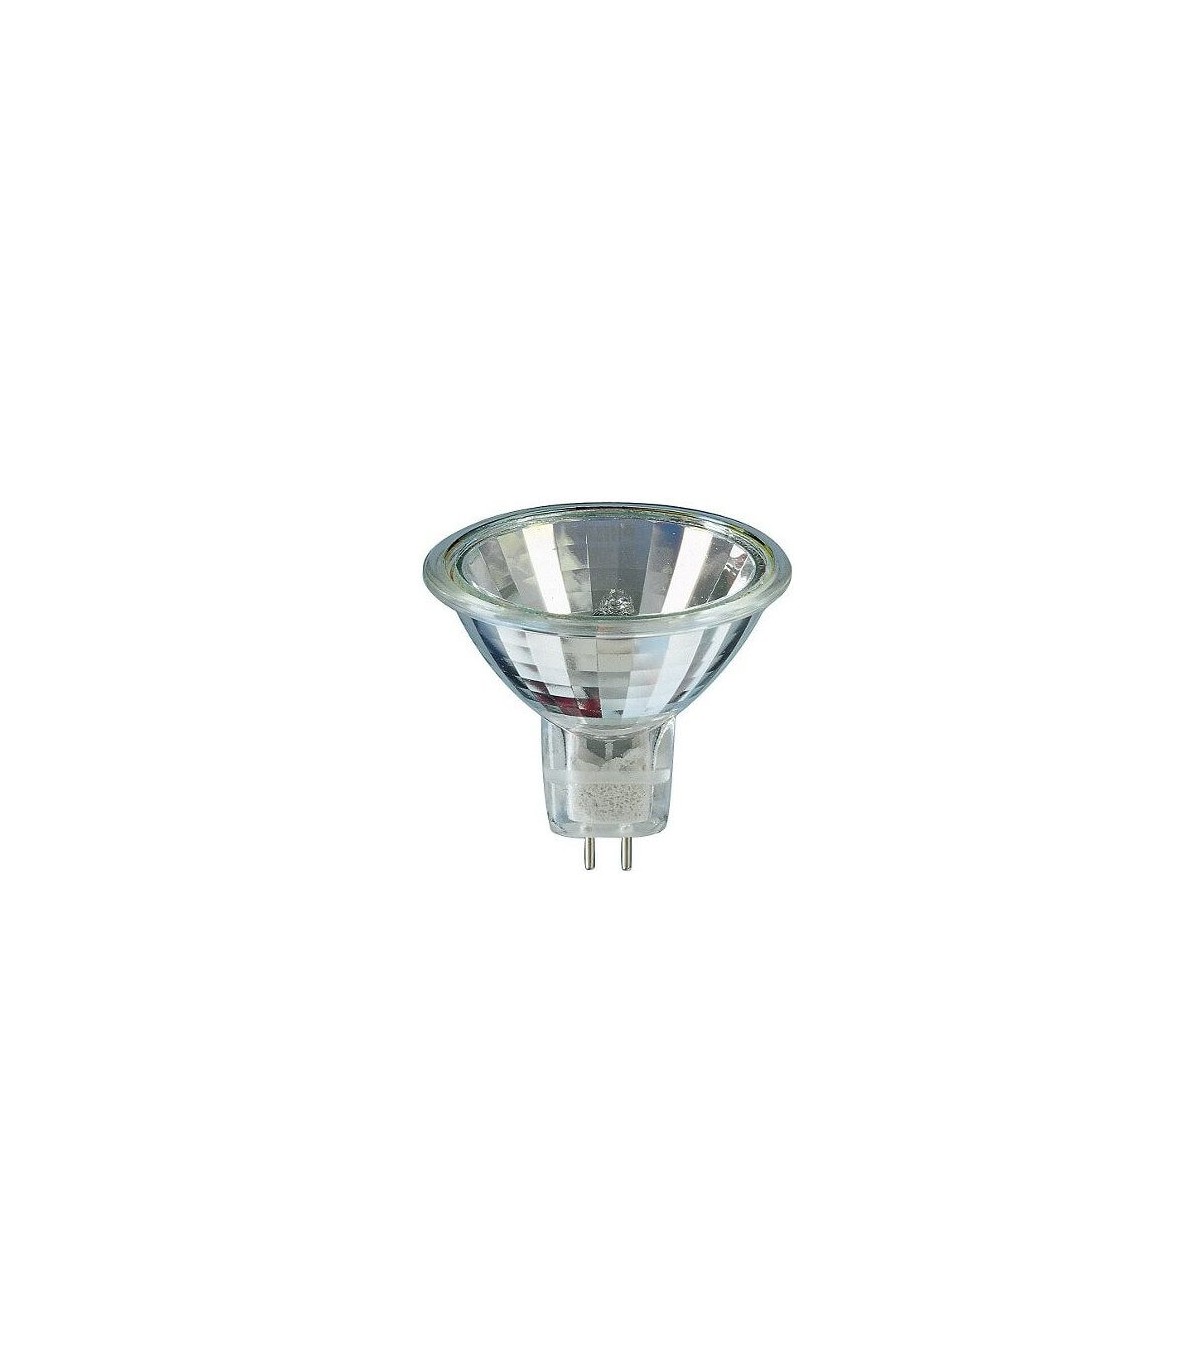 Acheter Philips Lampes MASTERLine ampoule halogène GU5.3 (MR16), 20W